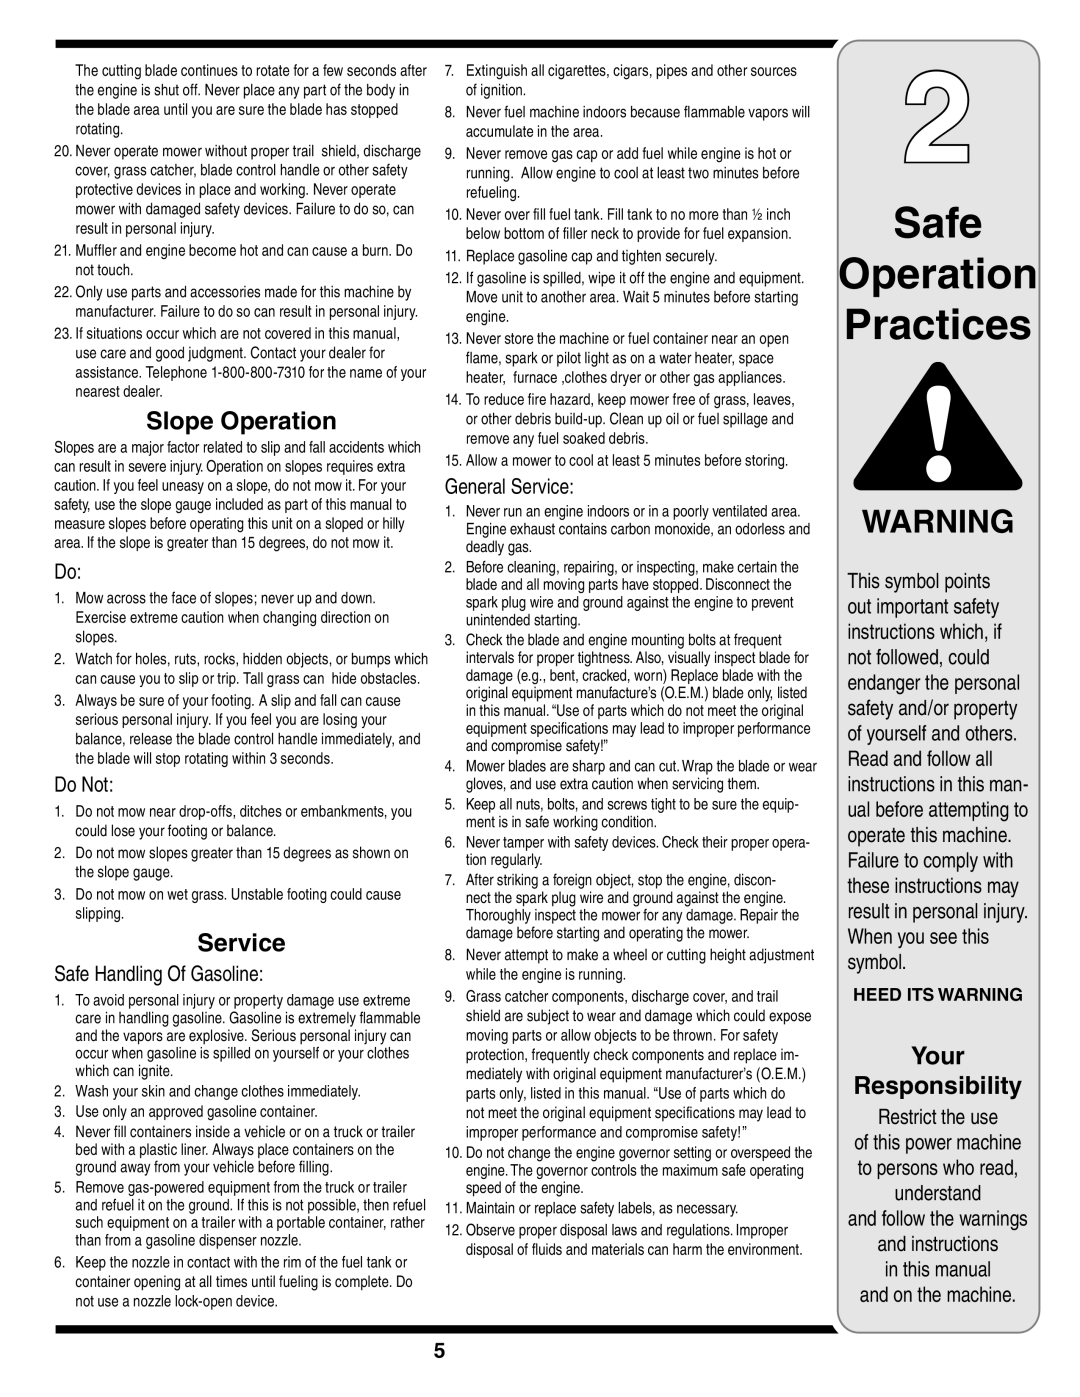 Yard-Man 829 warranty Safe Operation Practices, Slope Operation, Do Not, Safe Handling Of Gasoline, General Service 